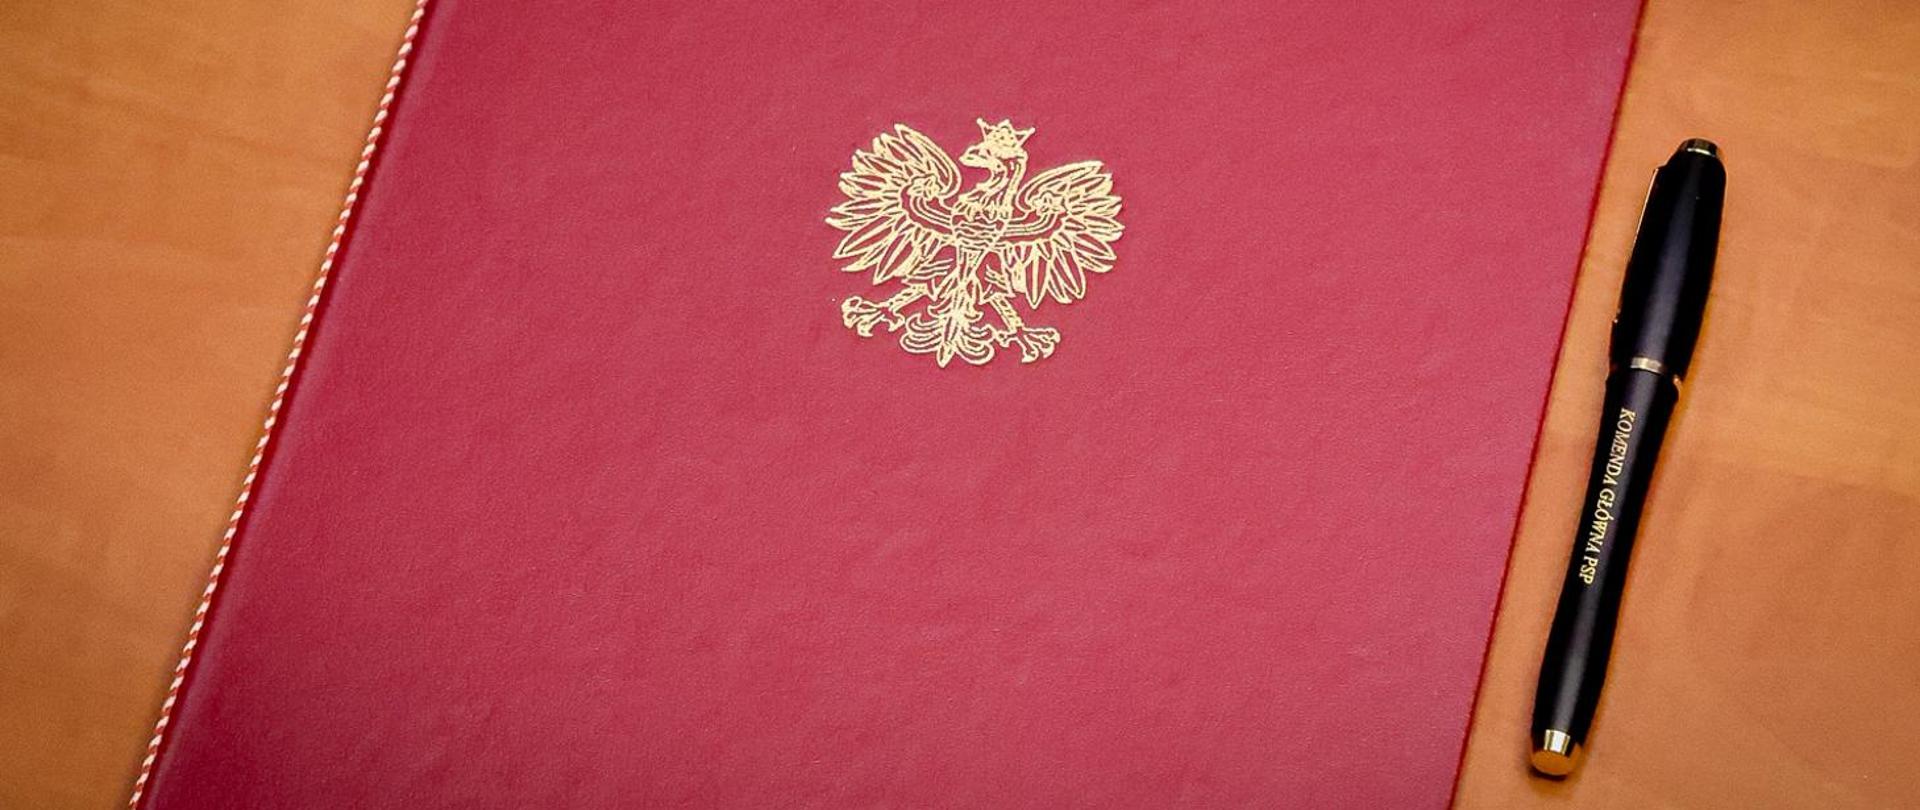 Teczka czerwona z logotypem Orła Białego